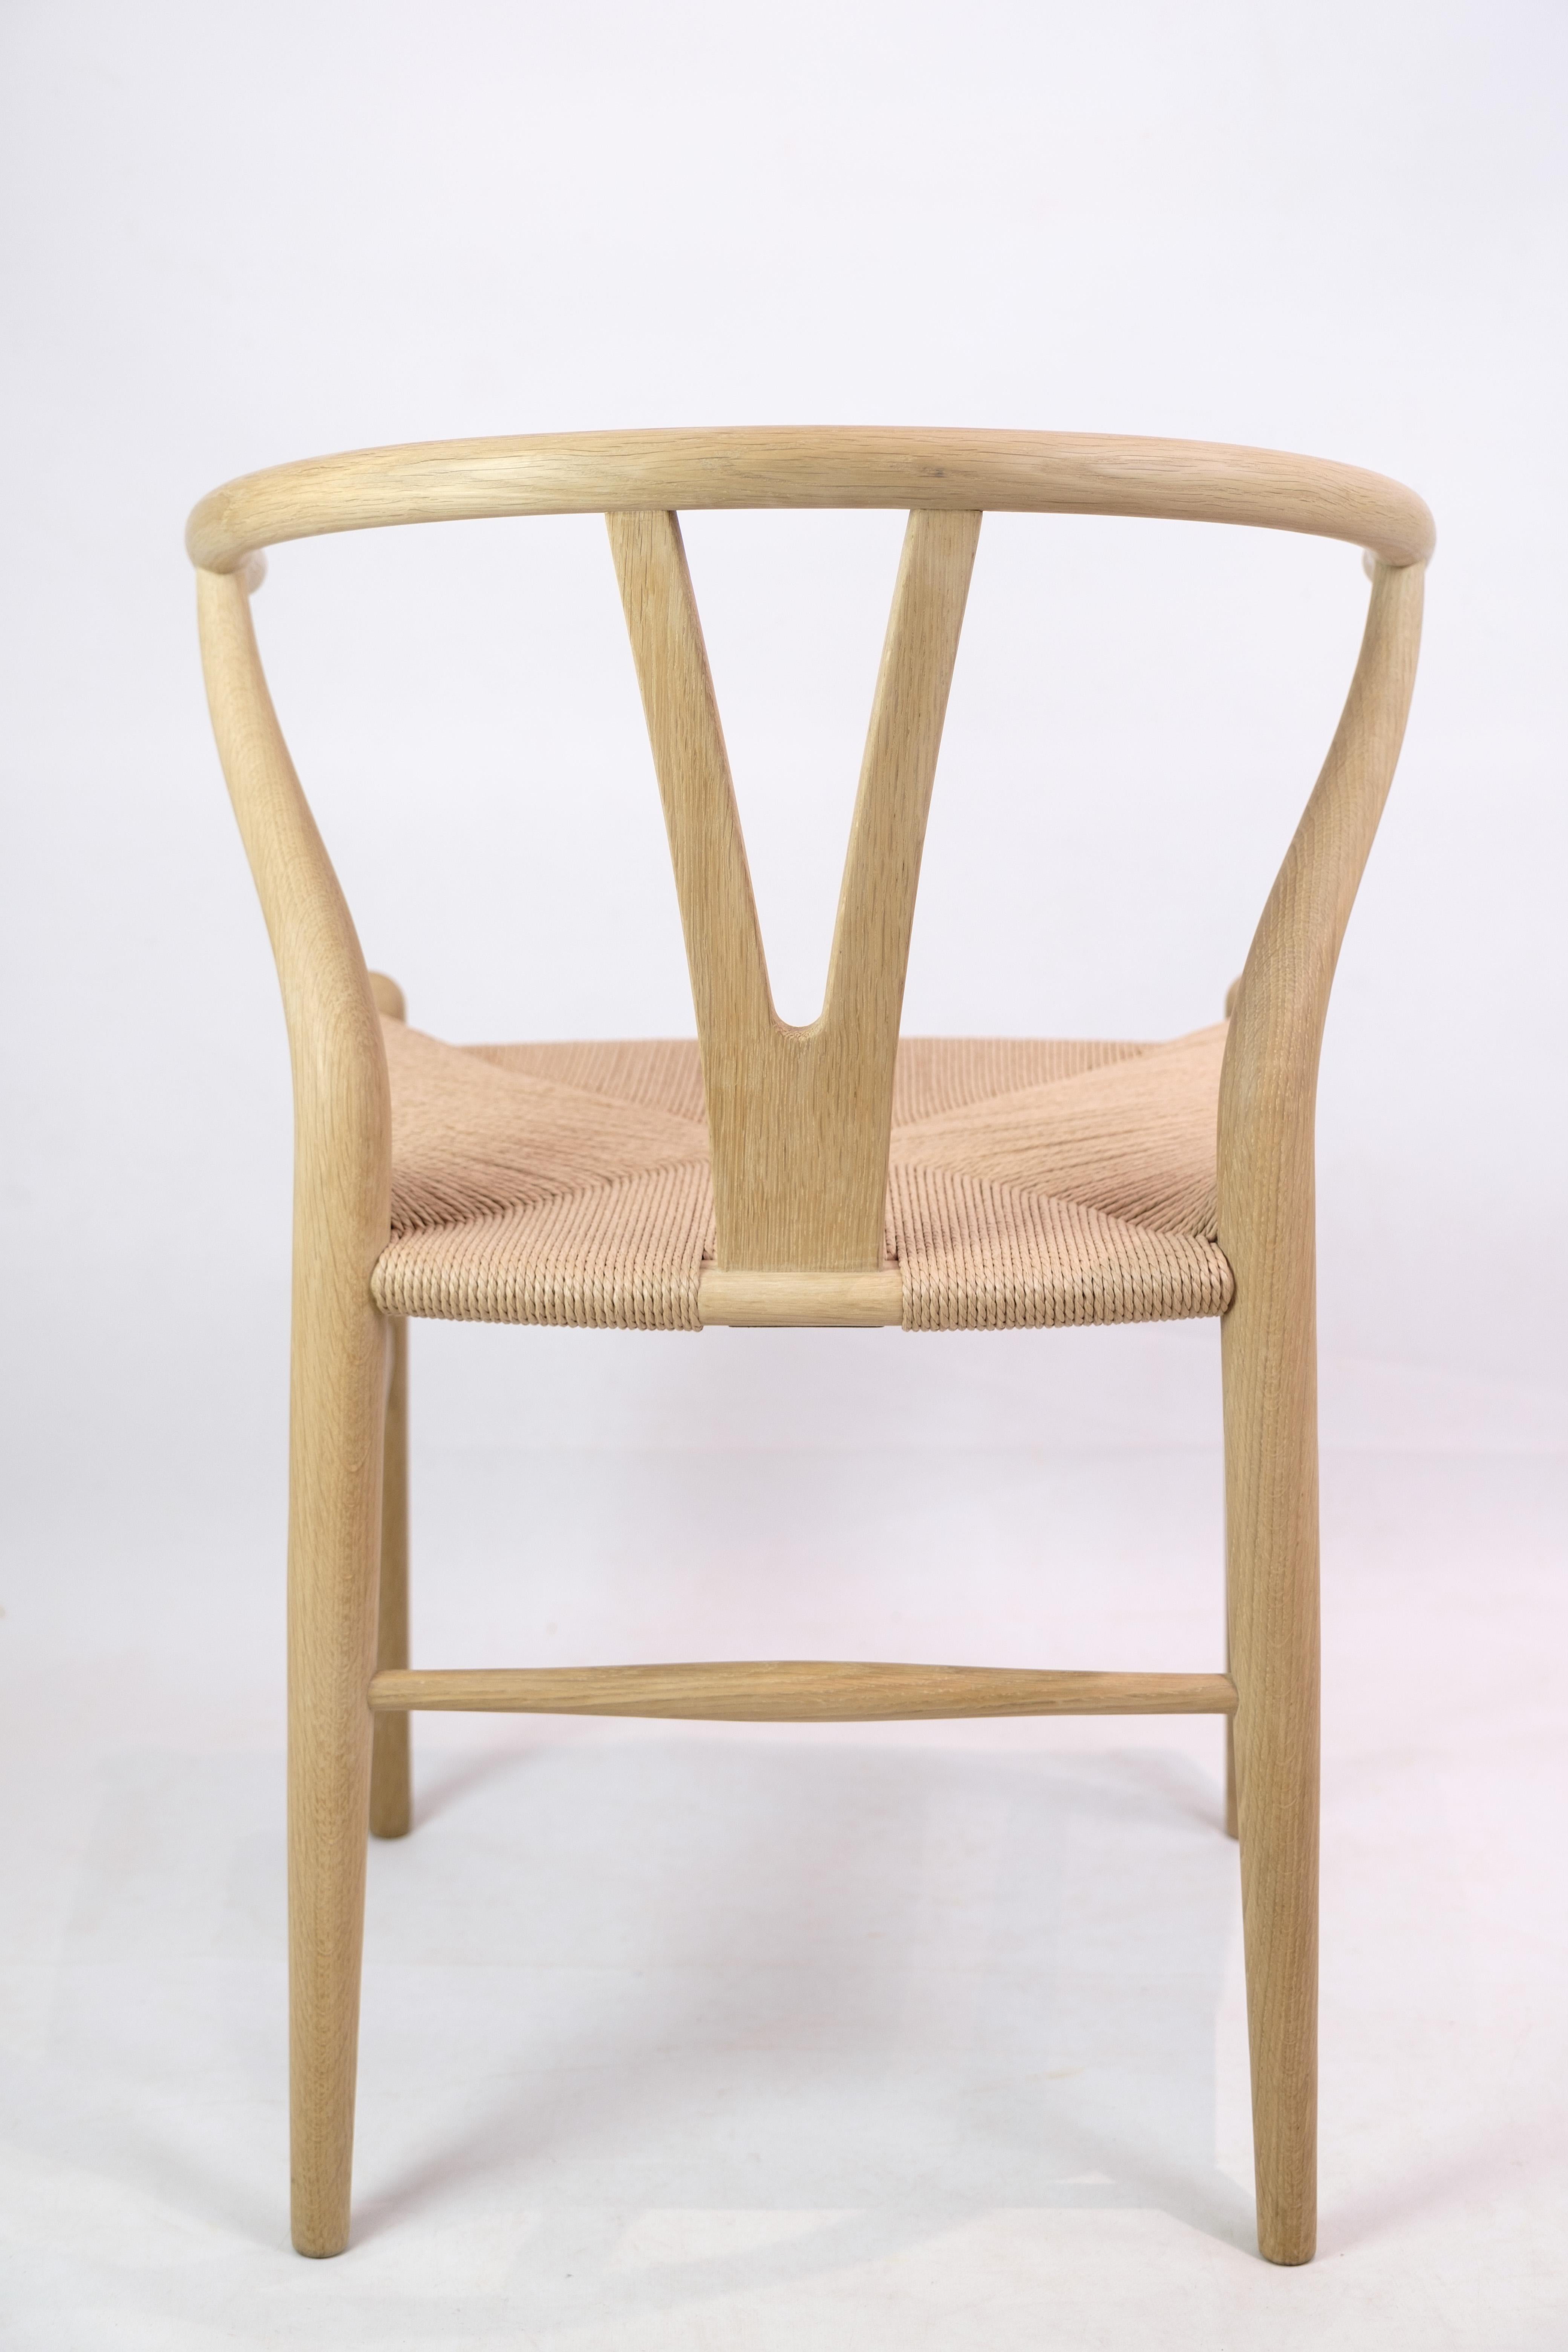 Y Chair, Model CH24, Hans J. Wegner in Oak, 1950 For Sale 1